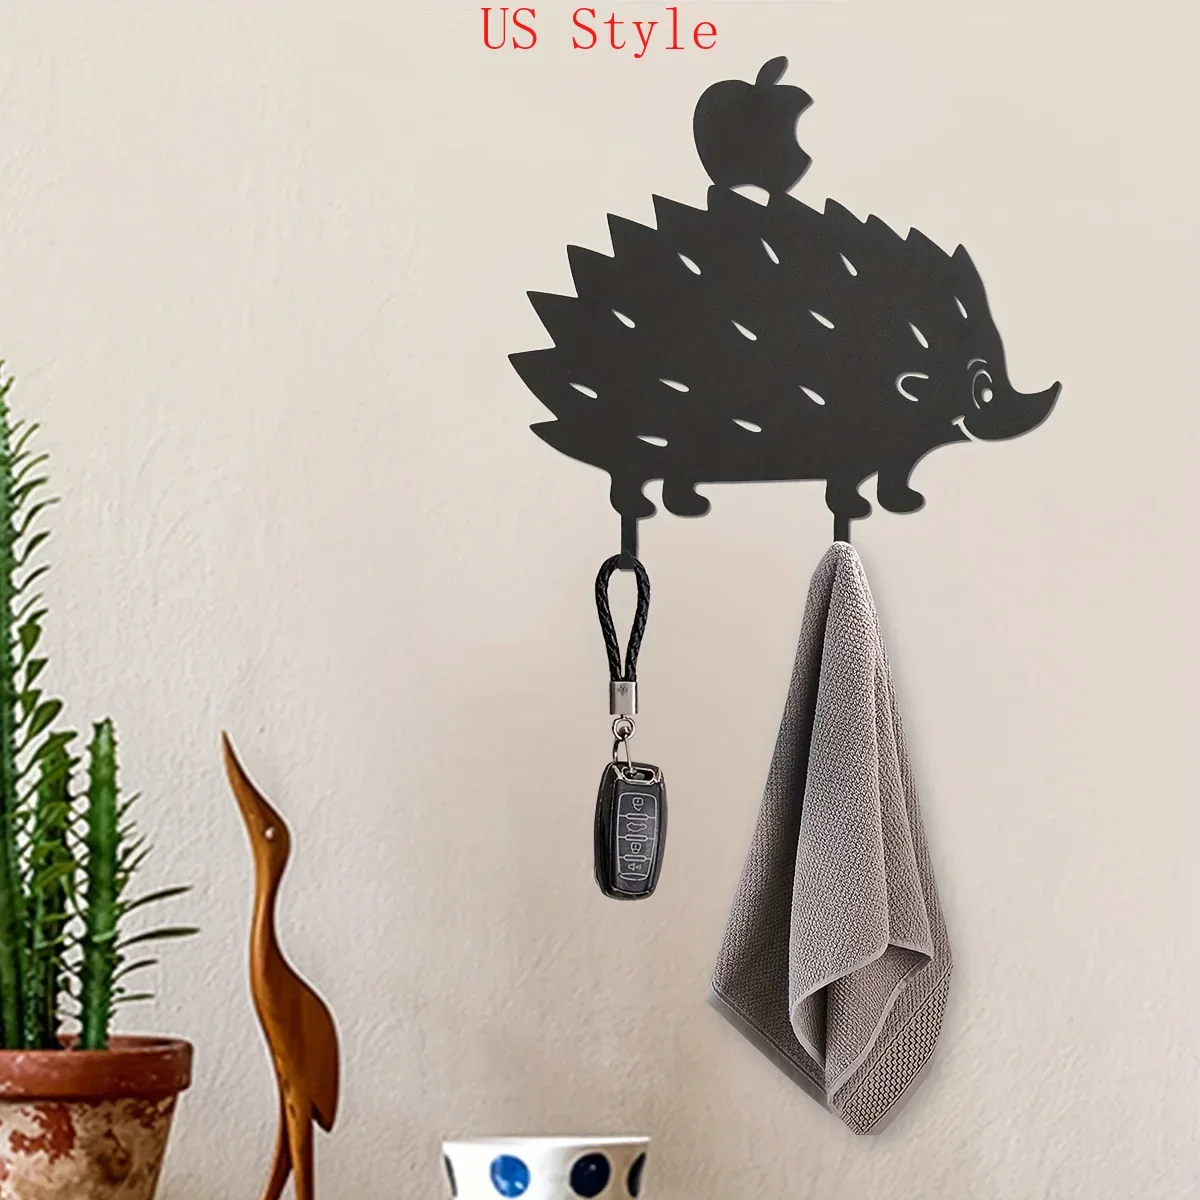 

Металлические креативные вешалки CIFBUY для ключей с изображением ежика, бытовые многофункциональные крючки для сумок и одежды, украшение для стен в гостиной